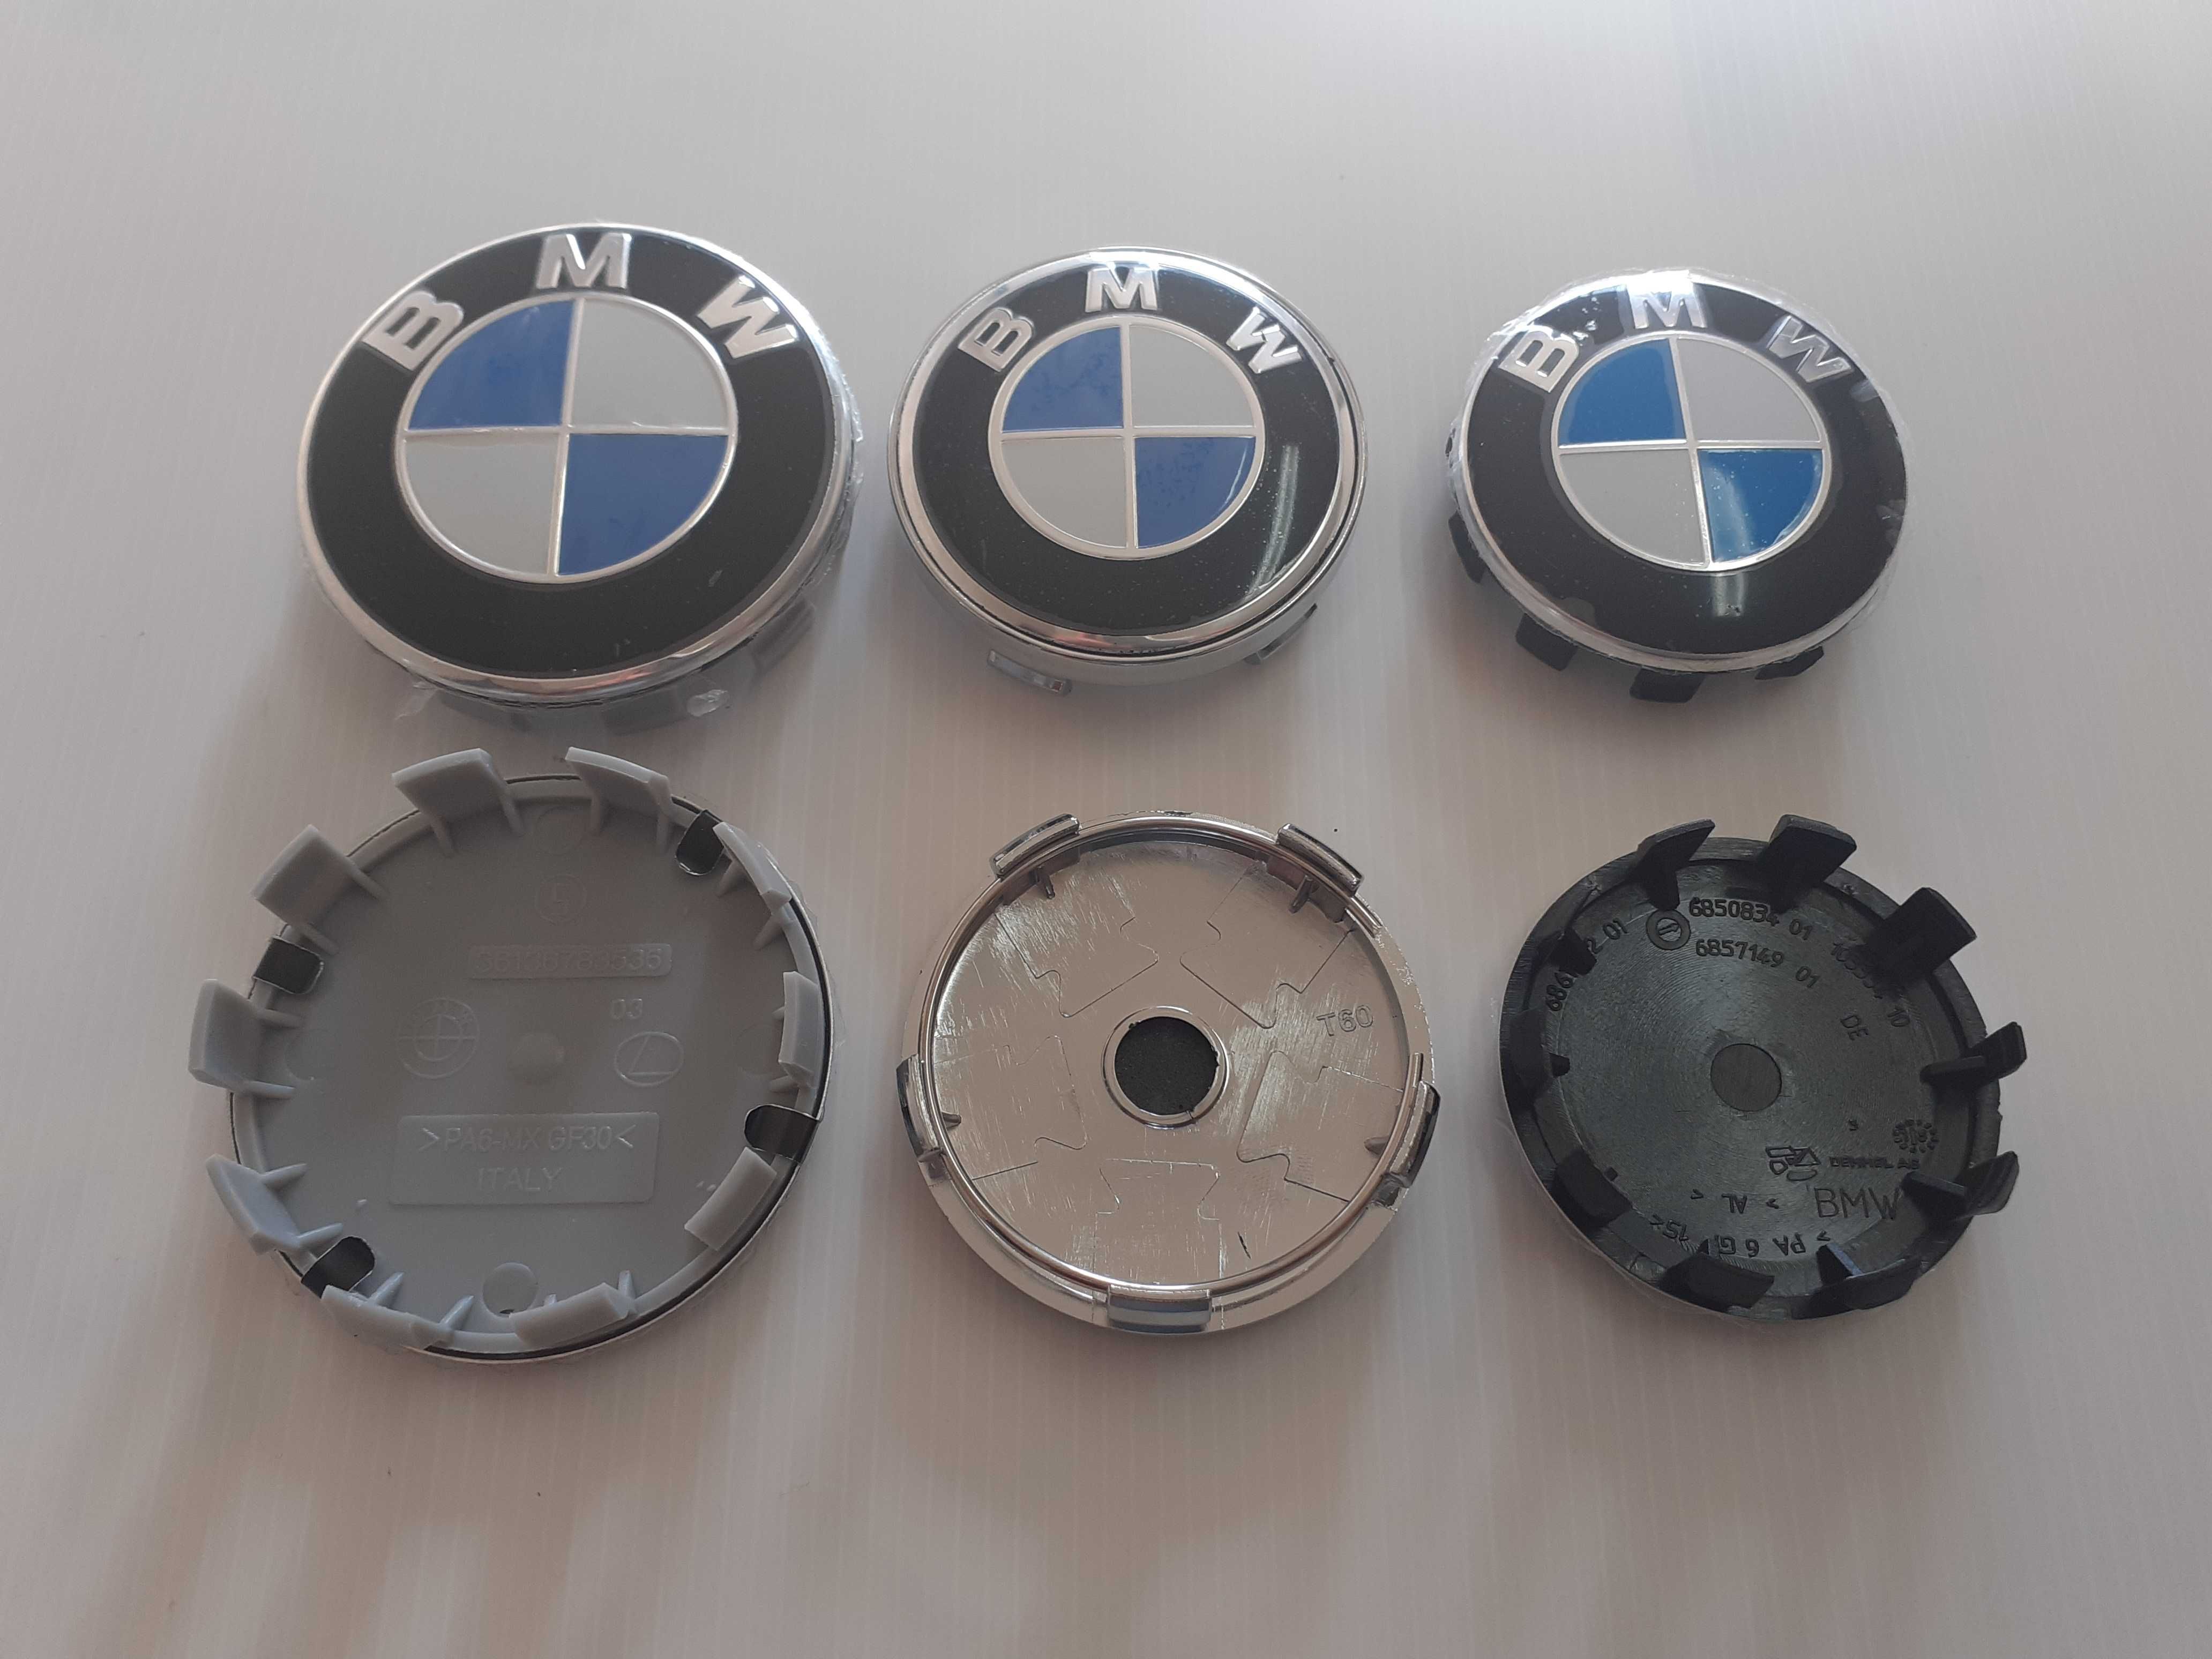 Centros/tampas de jante completos BMW com 56, 60, 65 e 68 mm